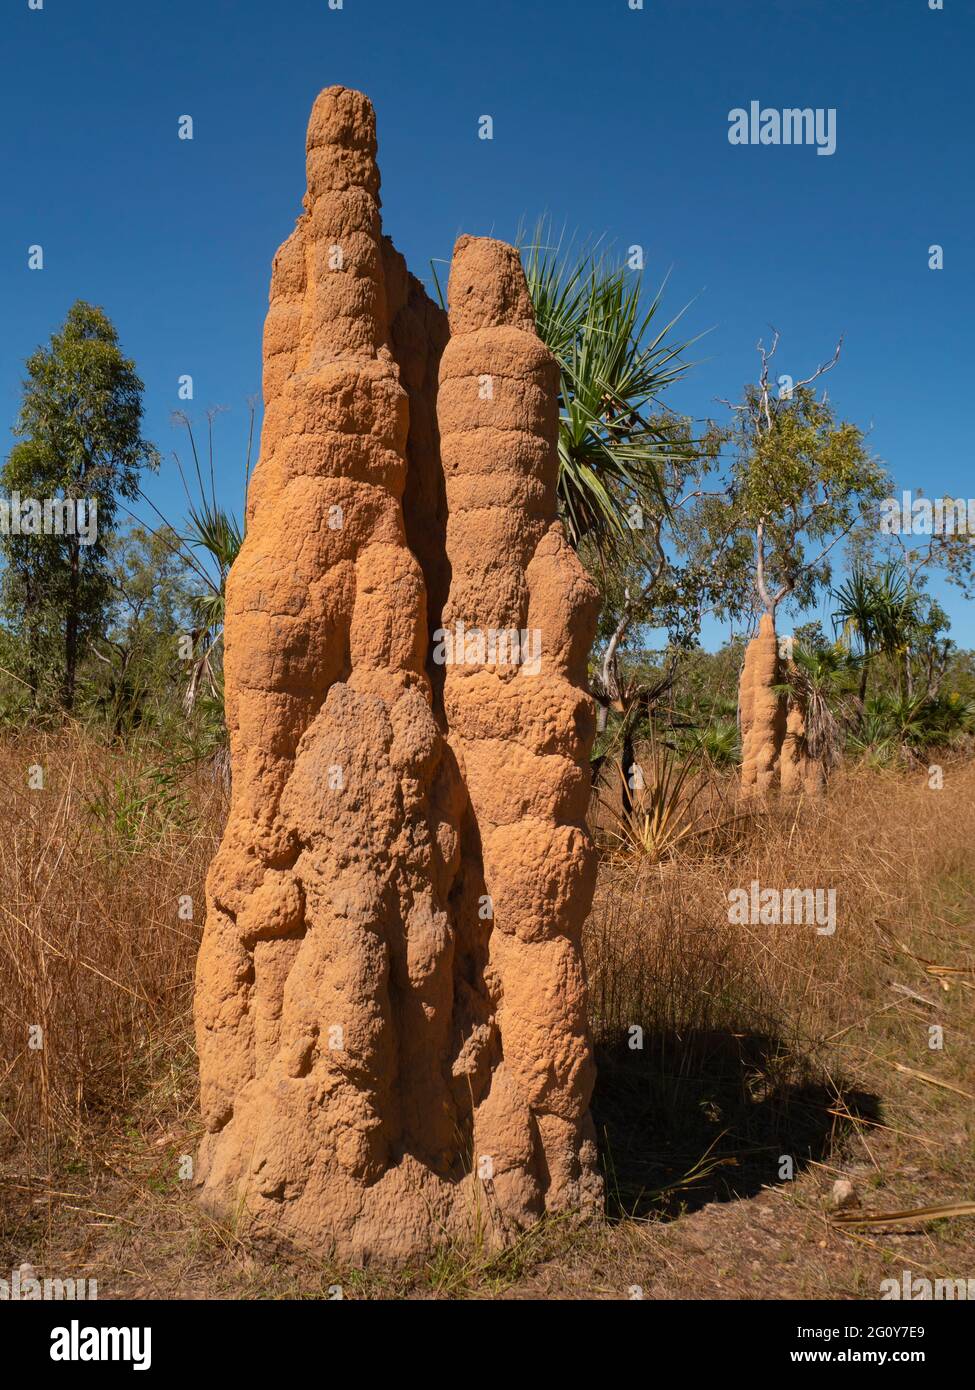 Alti tumuli di termite della Cattedrale rossa nella parte superiore tropicale del territorio del Nord. Foto Stock